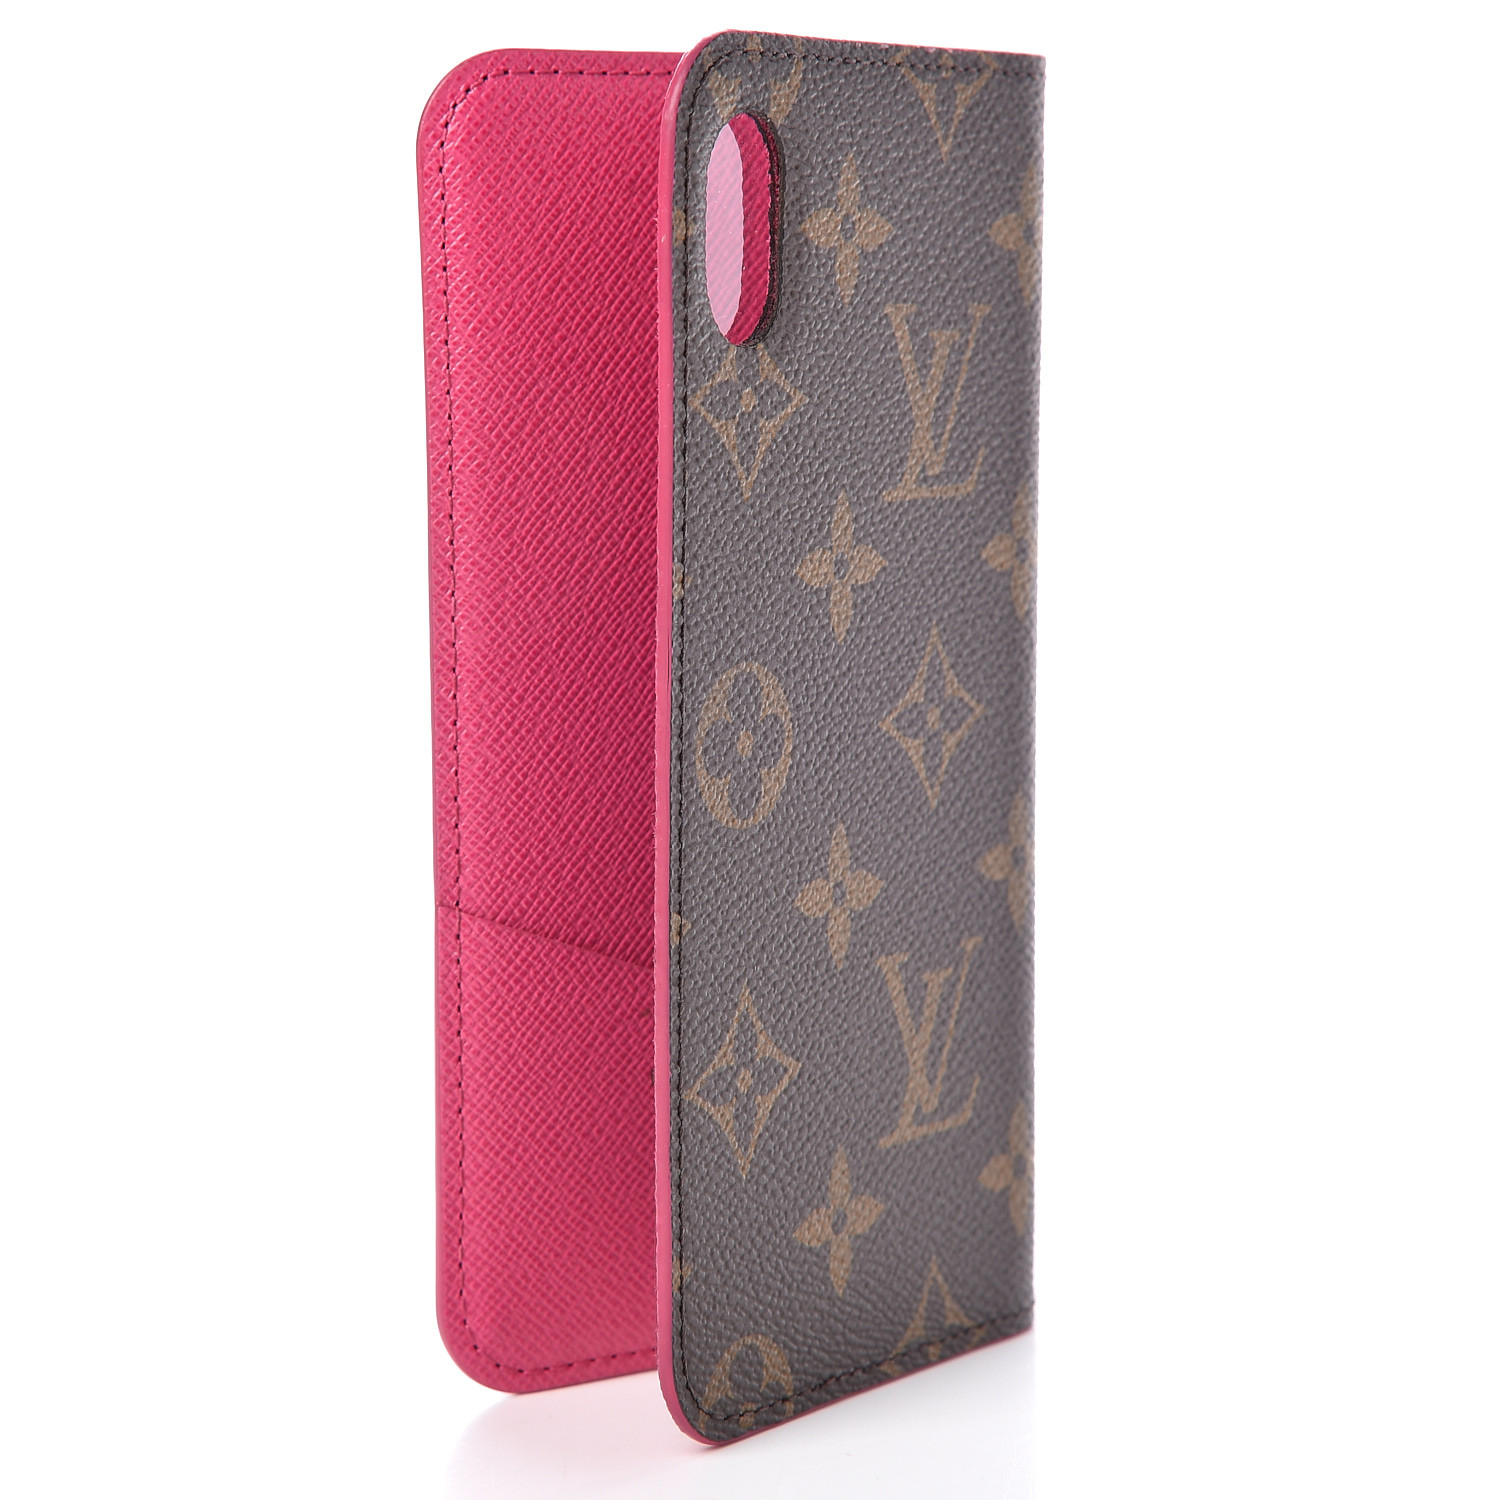 Louis Vuitton iPhone X Folio Case Review, Pros & Cons